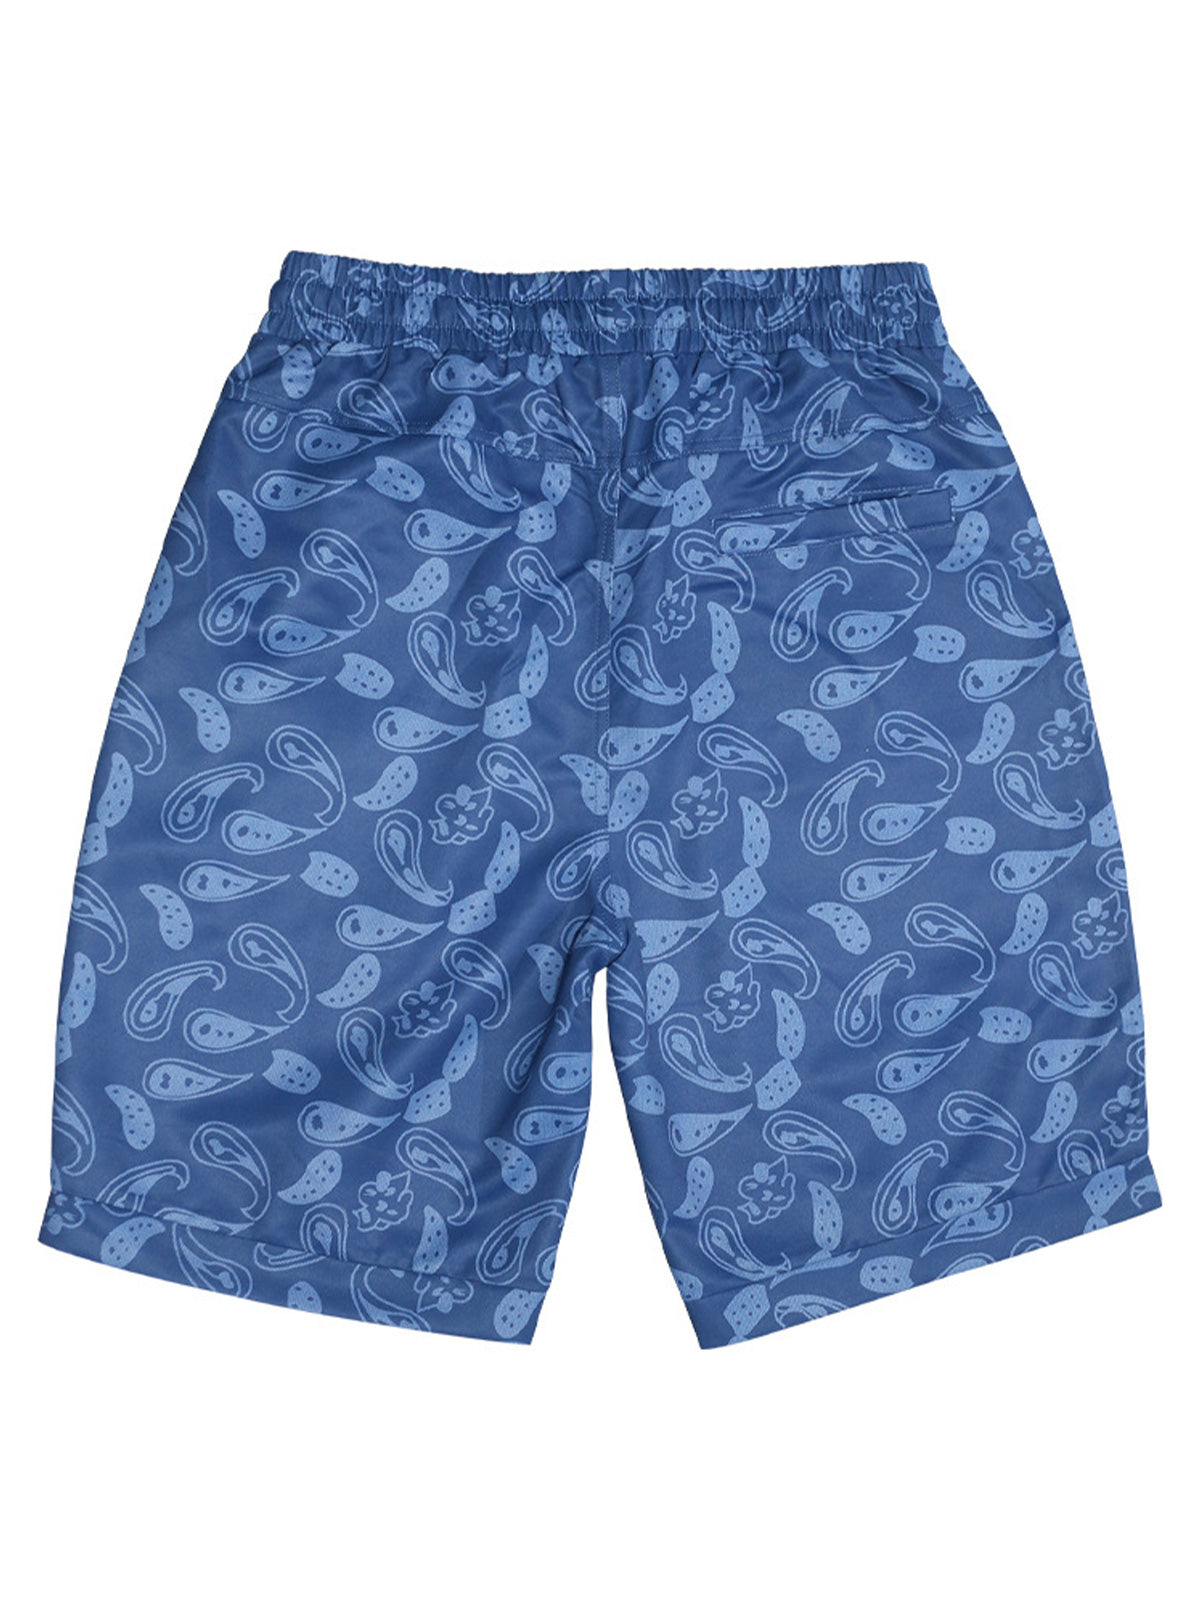 Men's Hawaiian Print Loose Beach Shorts